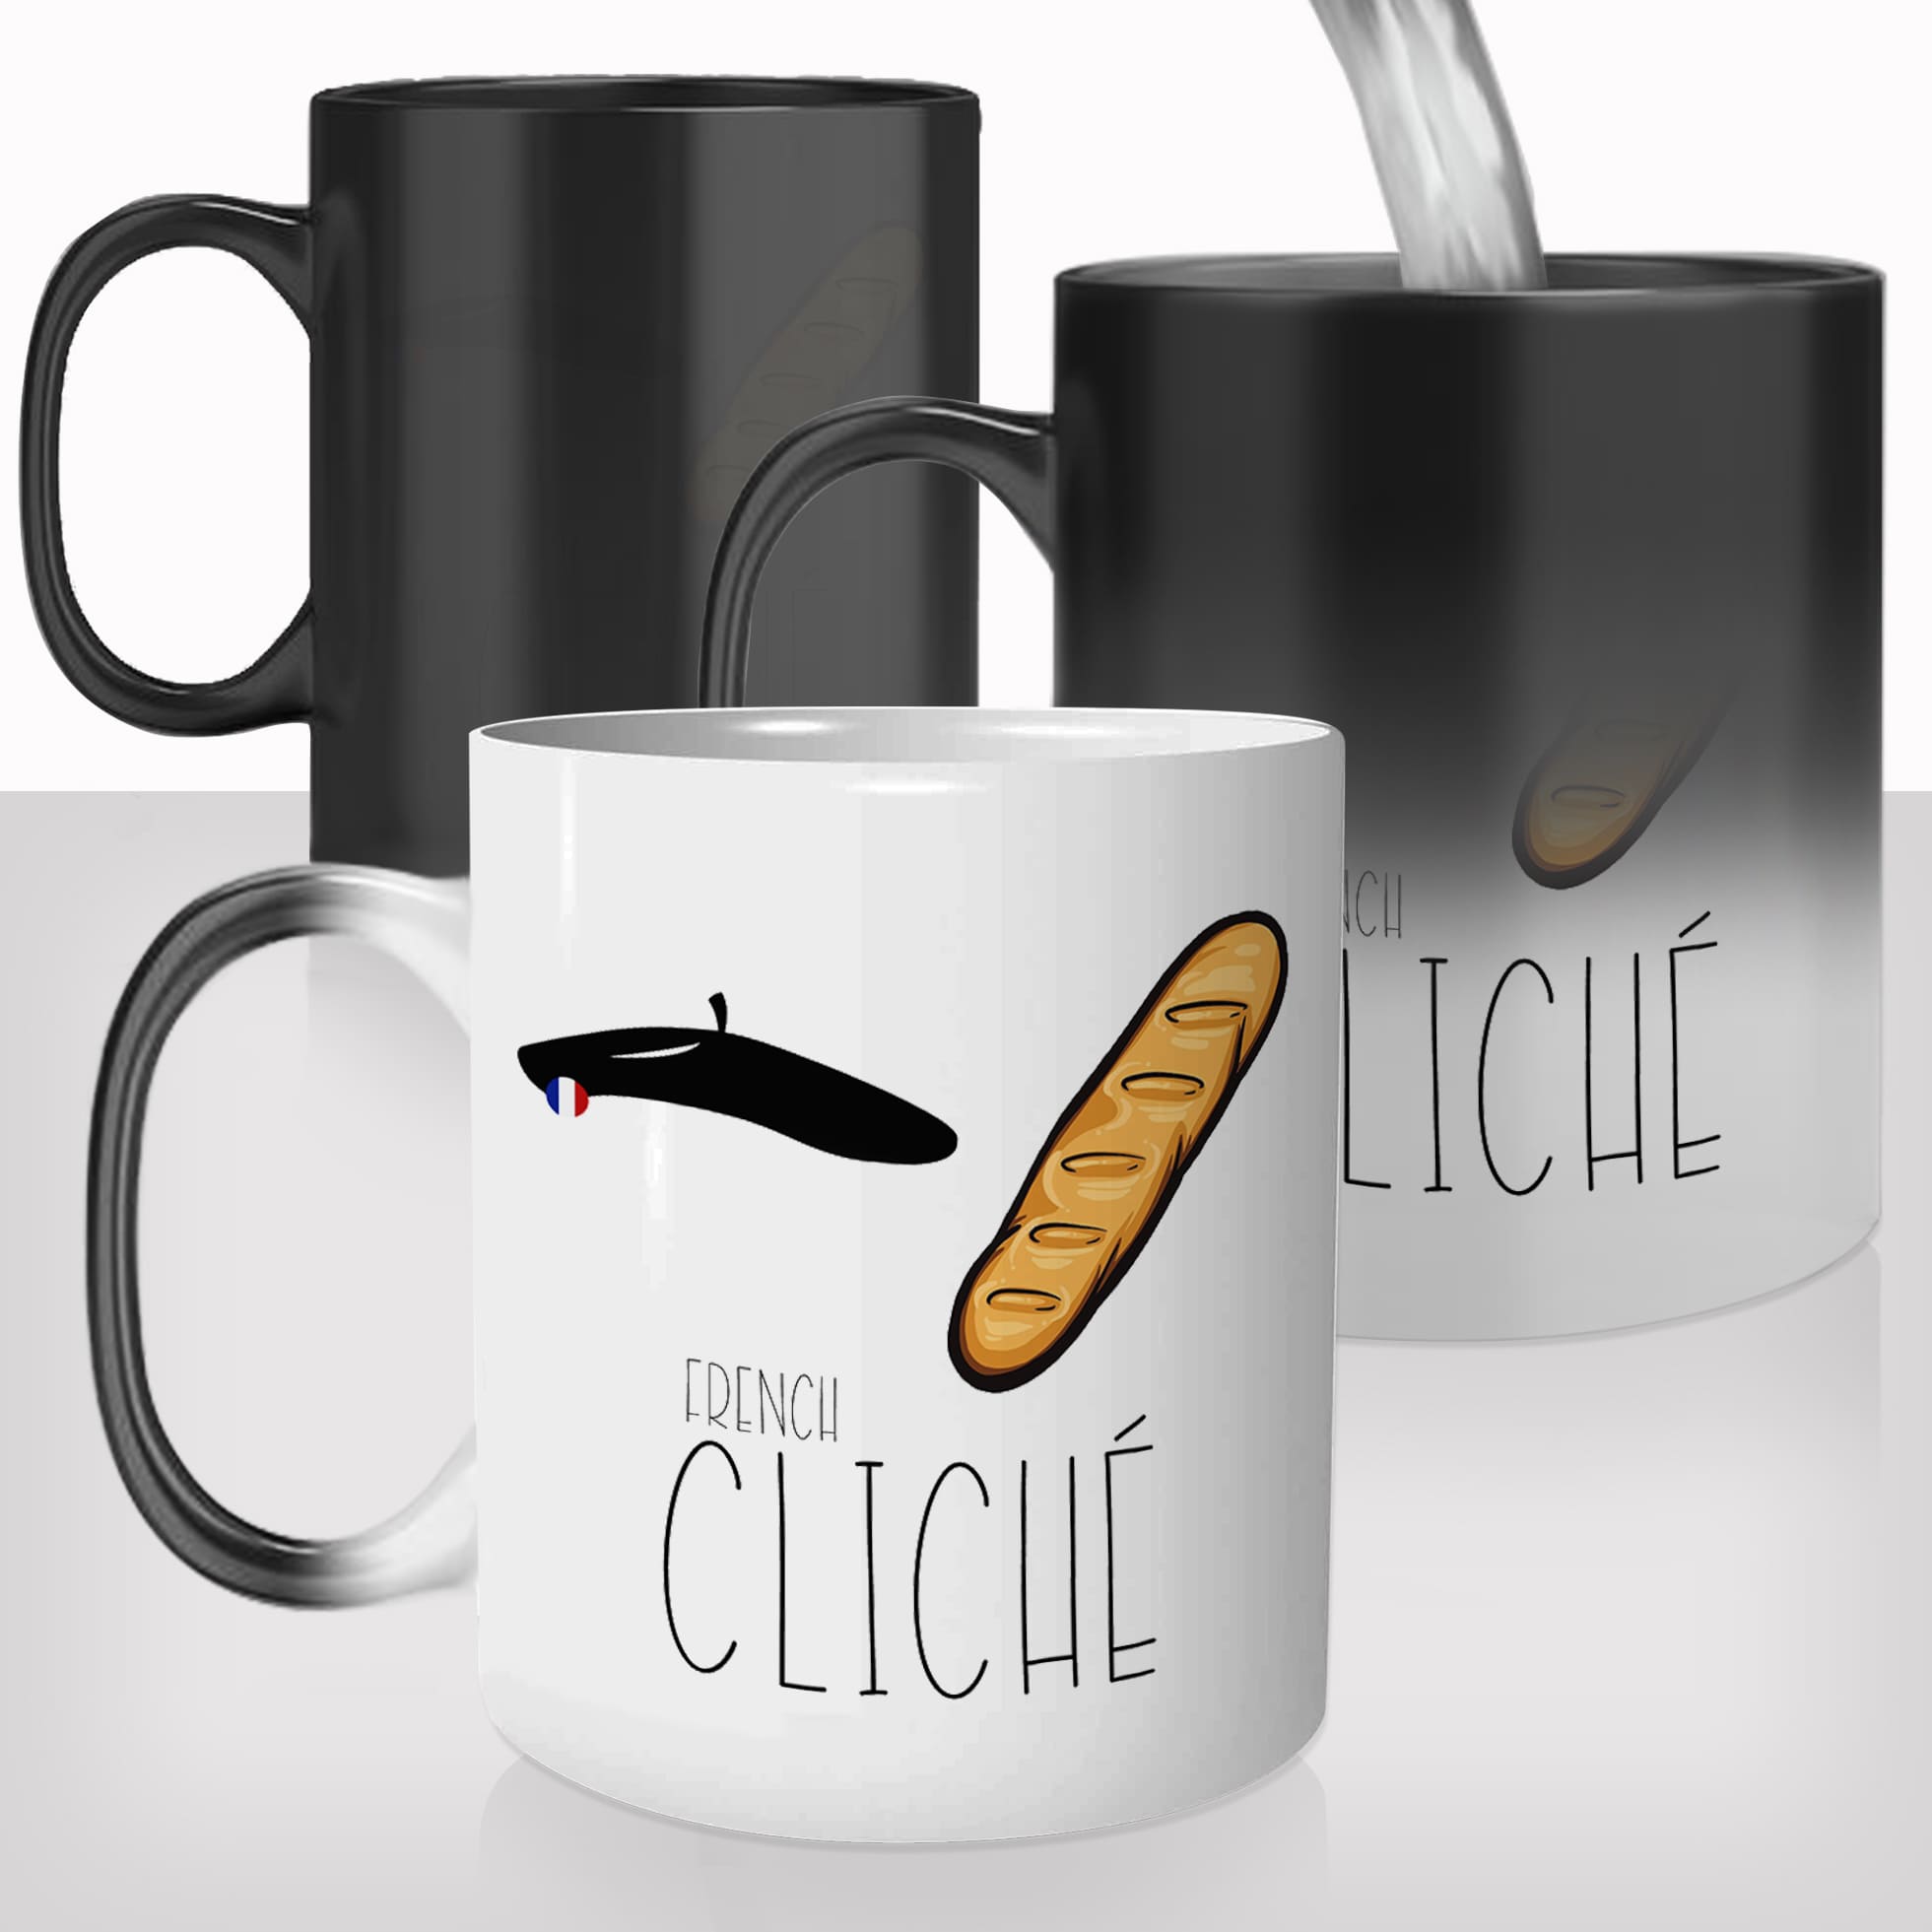 mug-tasse-magique-thermoreactif-personnalisé-french-cliché-france-beret-baguette-pain-paris-drole-idée-cadeau-original-personnalisable-francais